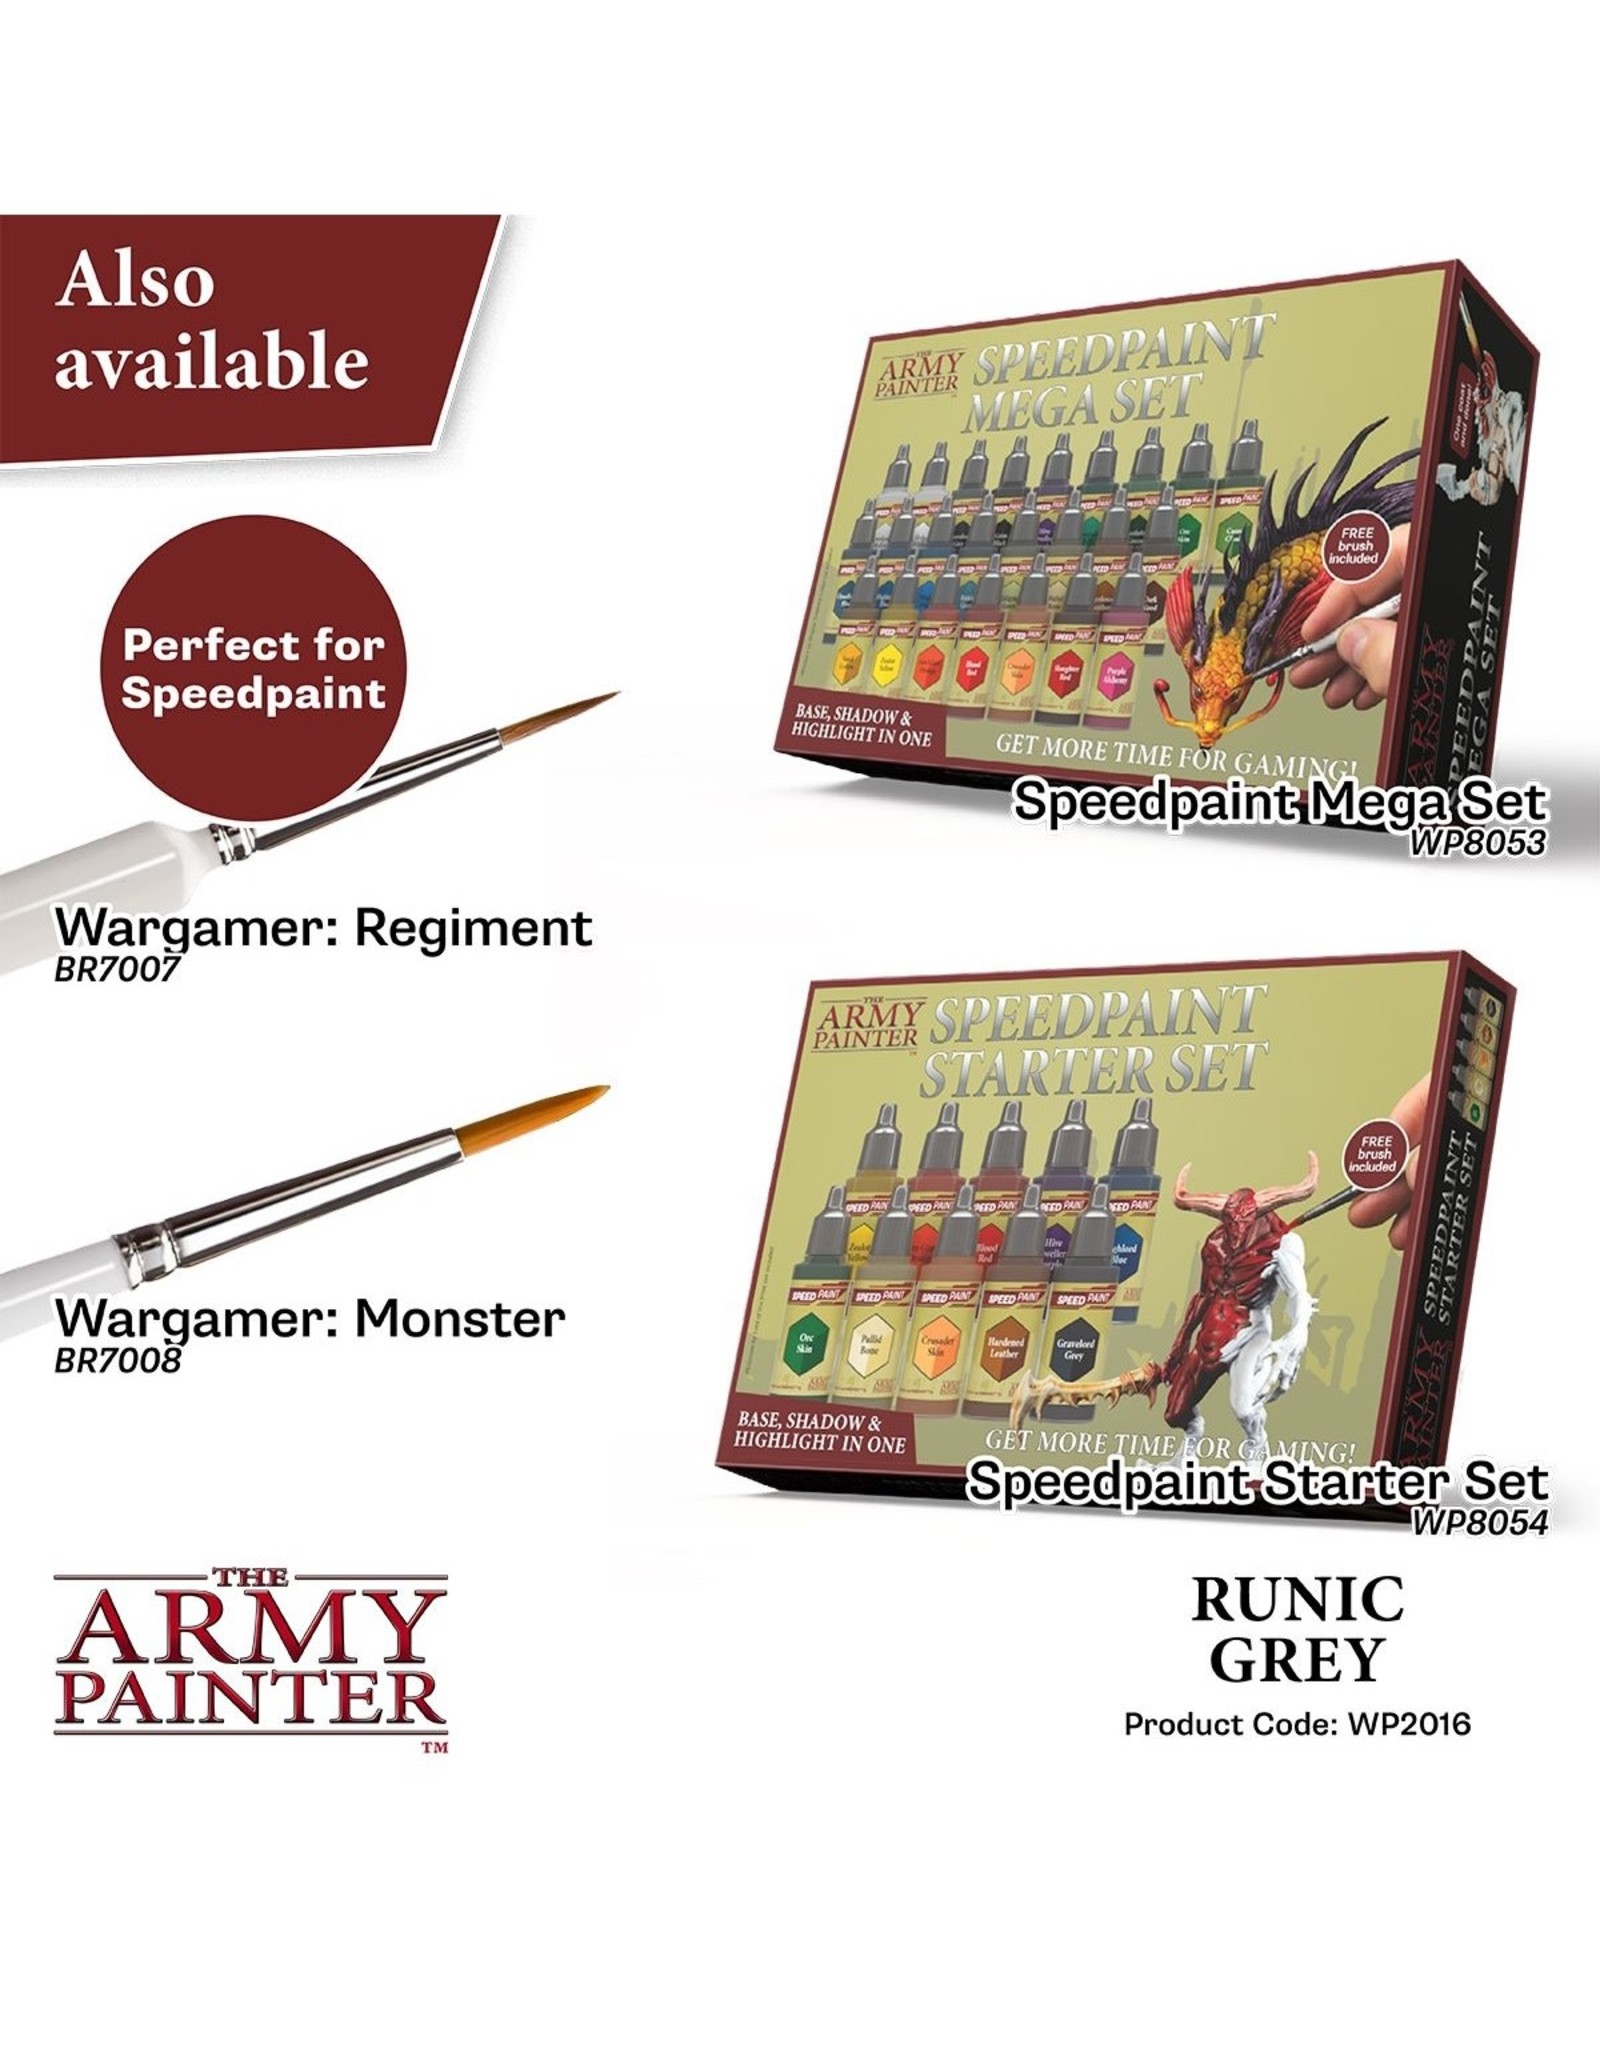 The Army Painter Speedpaint 2.0: Runic Grey (18ml)